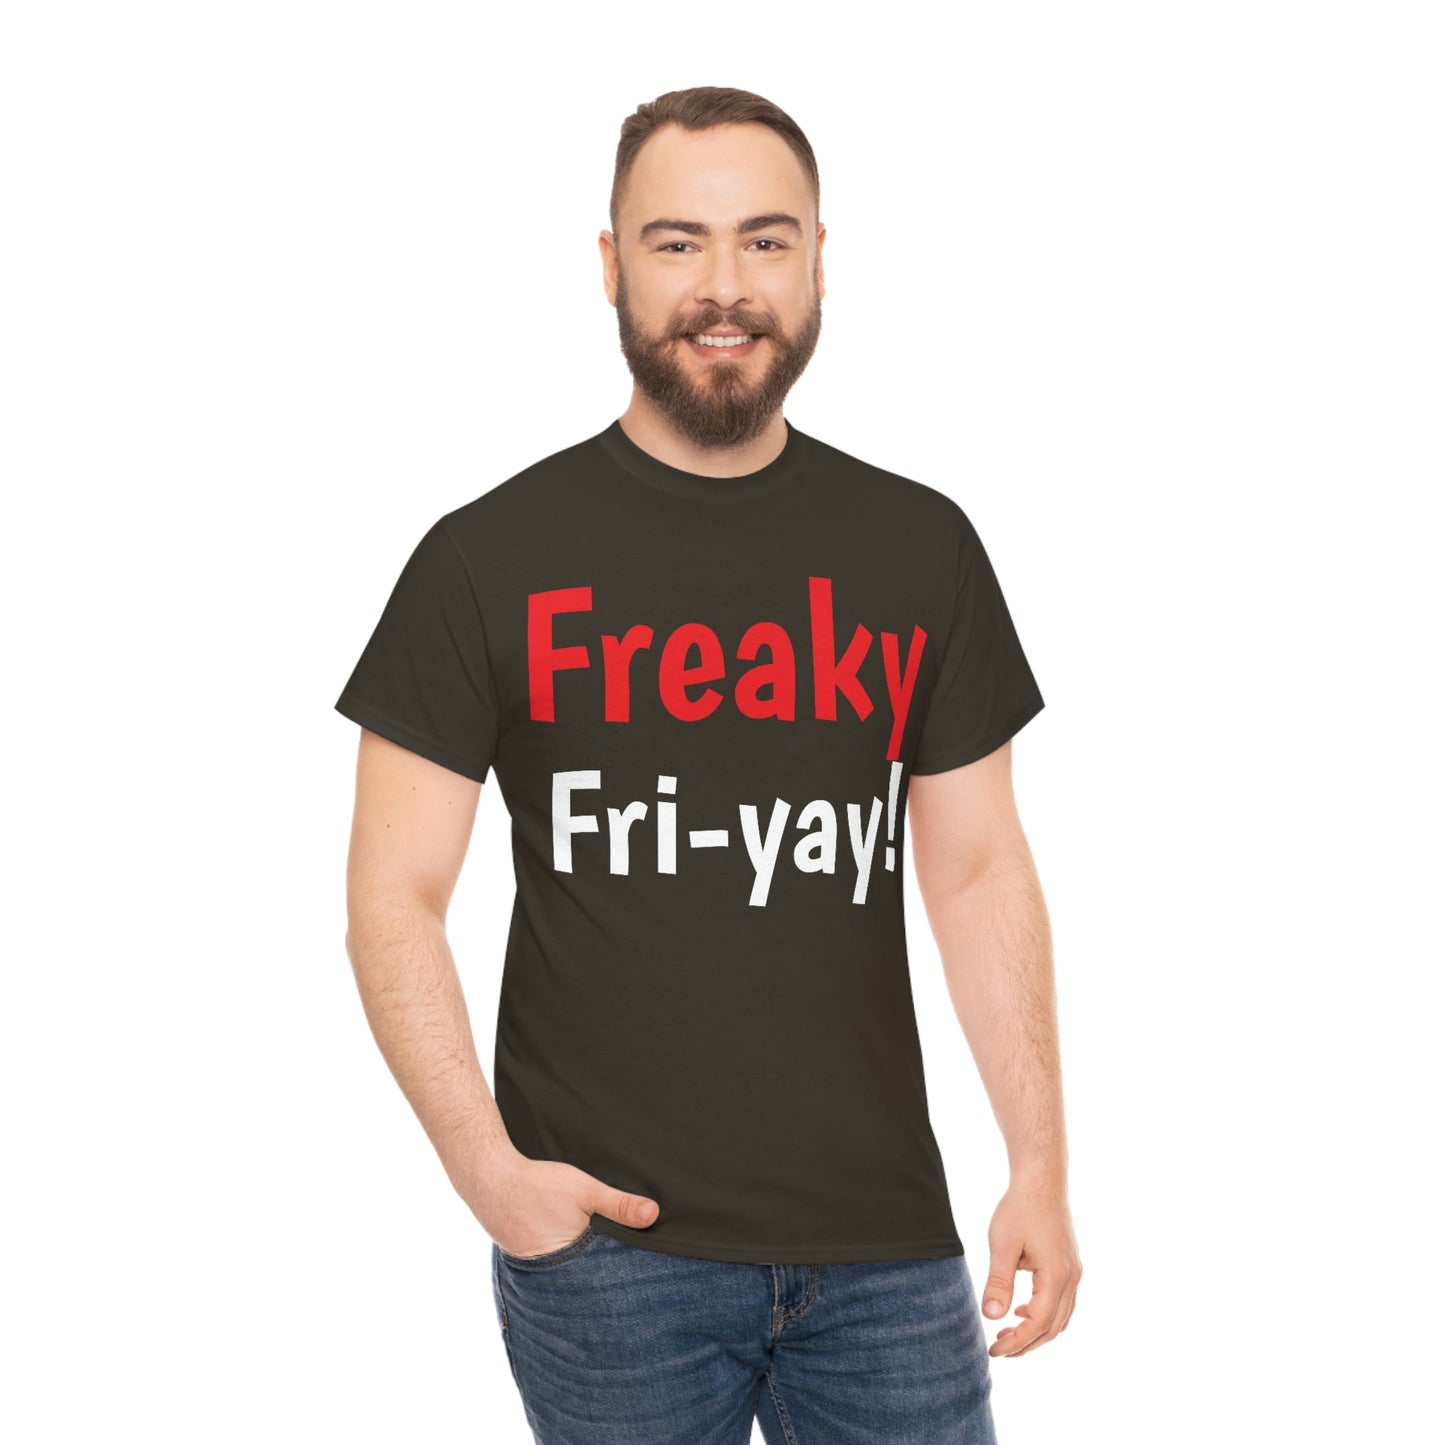 Freaky Fri-Yay!